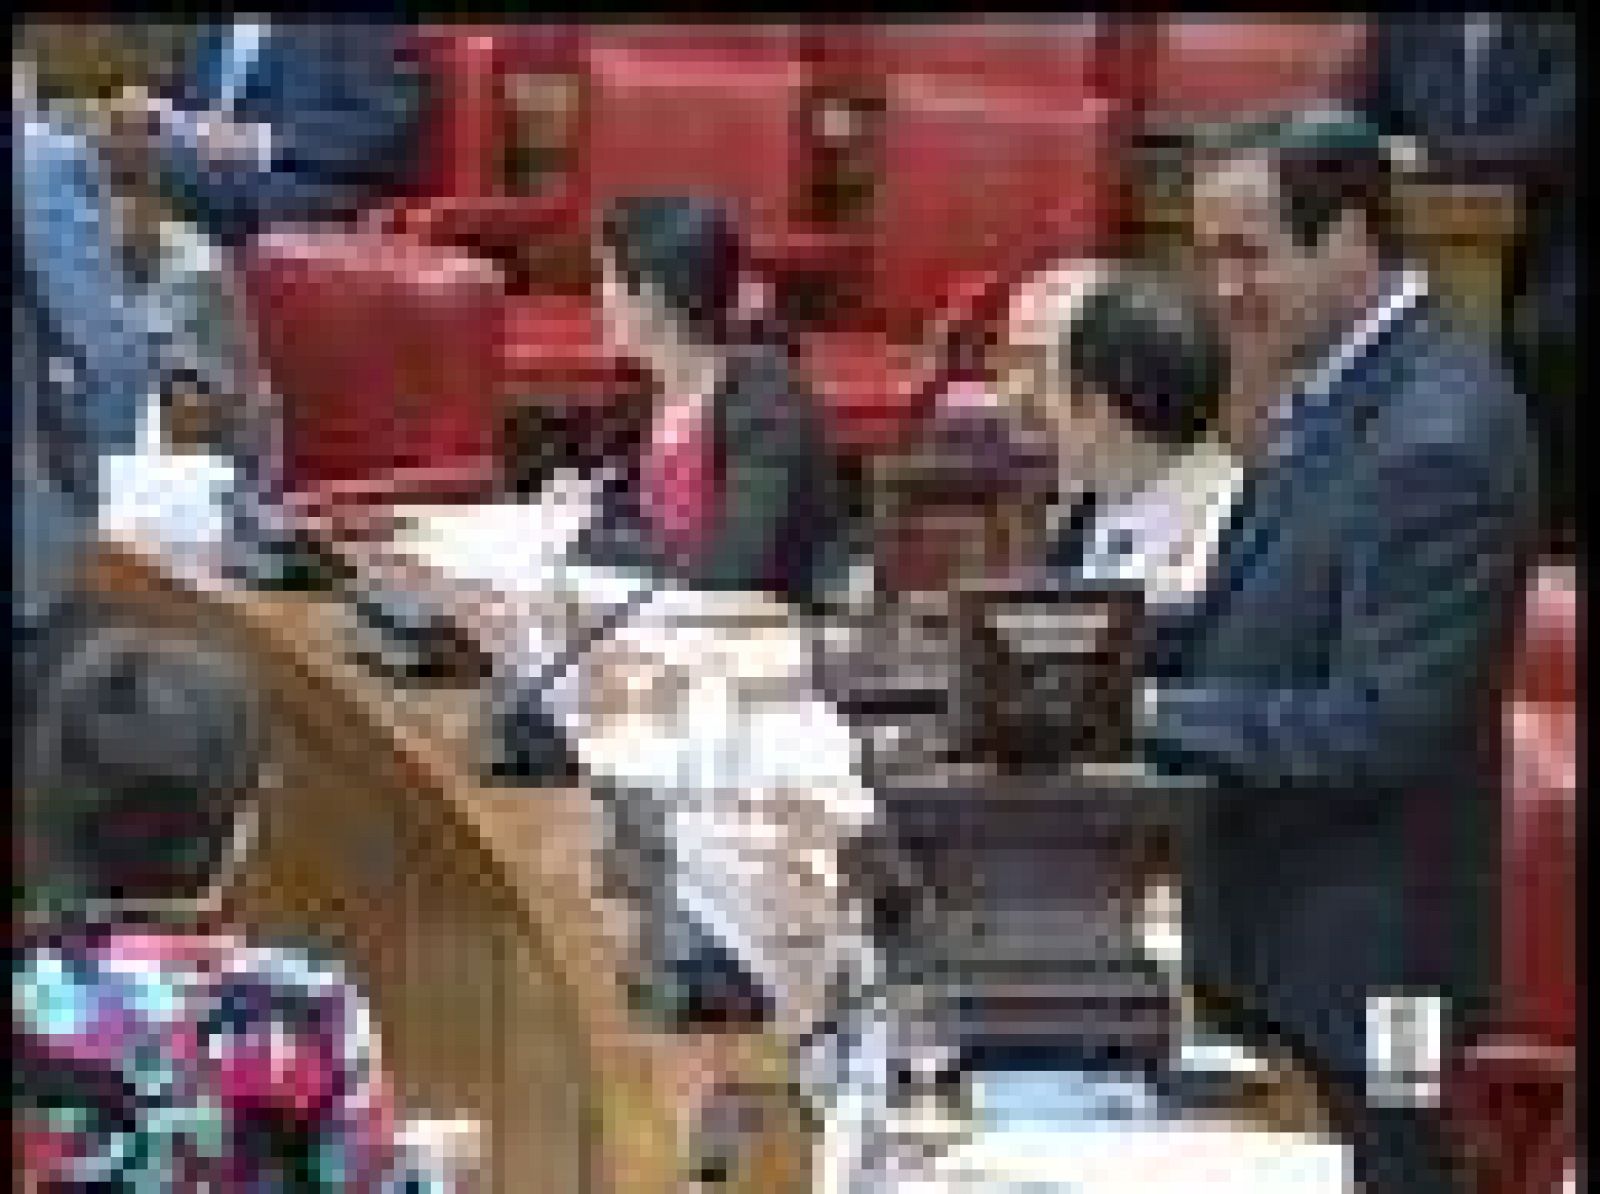  Rodríguez Zapatero no comparecerá finalmente en el Congreso para explicar la reforma de la financiación autonómica. El grupo de Iniciativa per Cataluña, que había pedido la comparecencia, la ha retirado después  de llegar a un acuerdo con el gobierno.